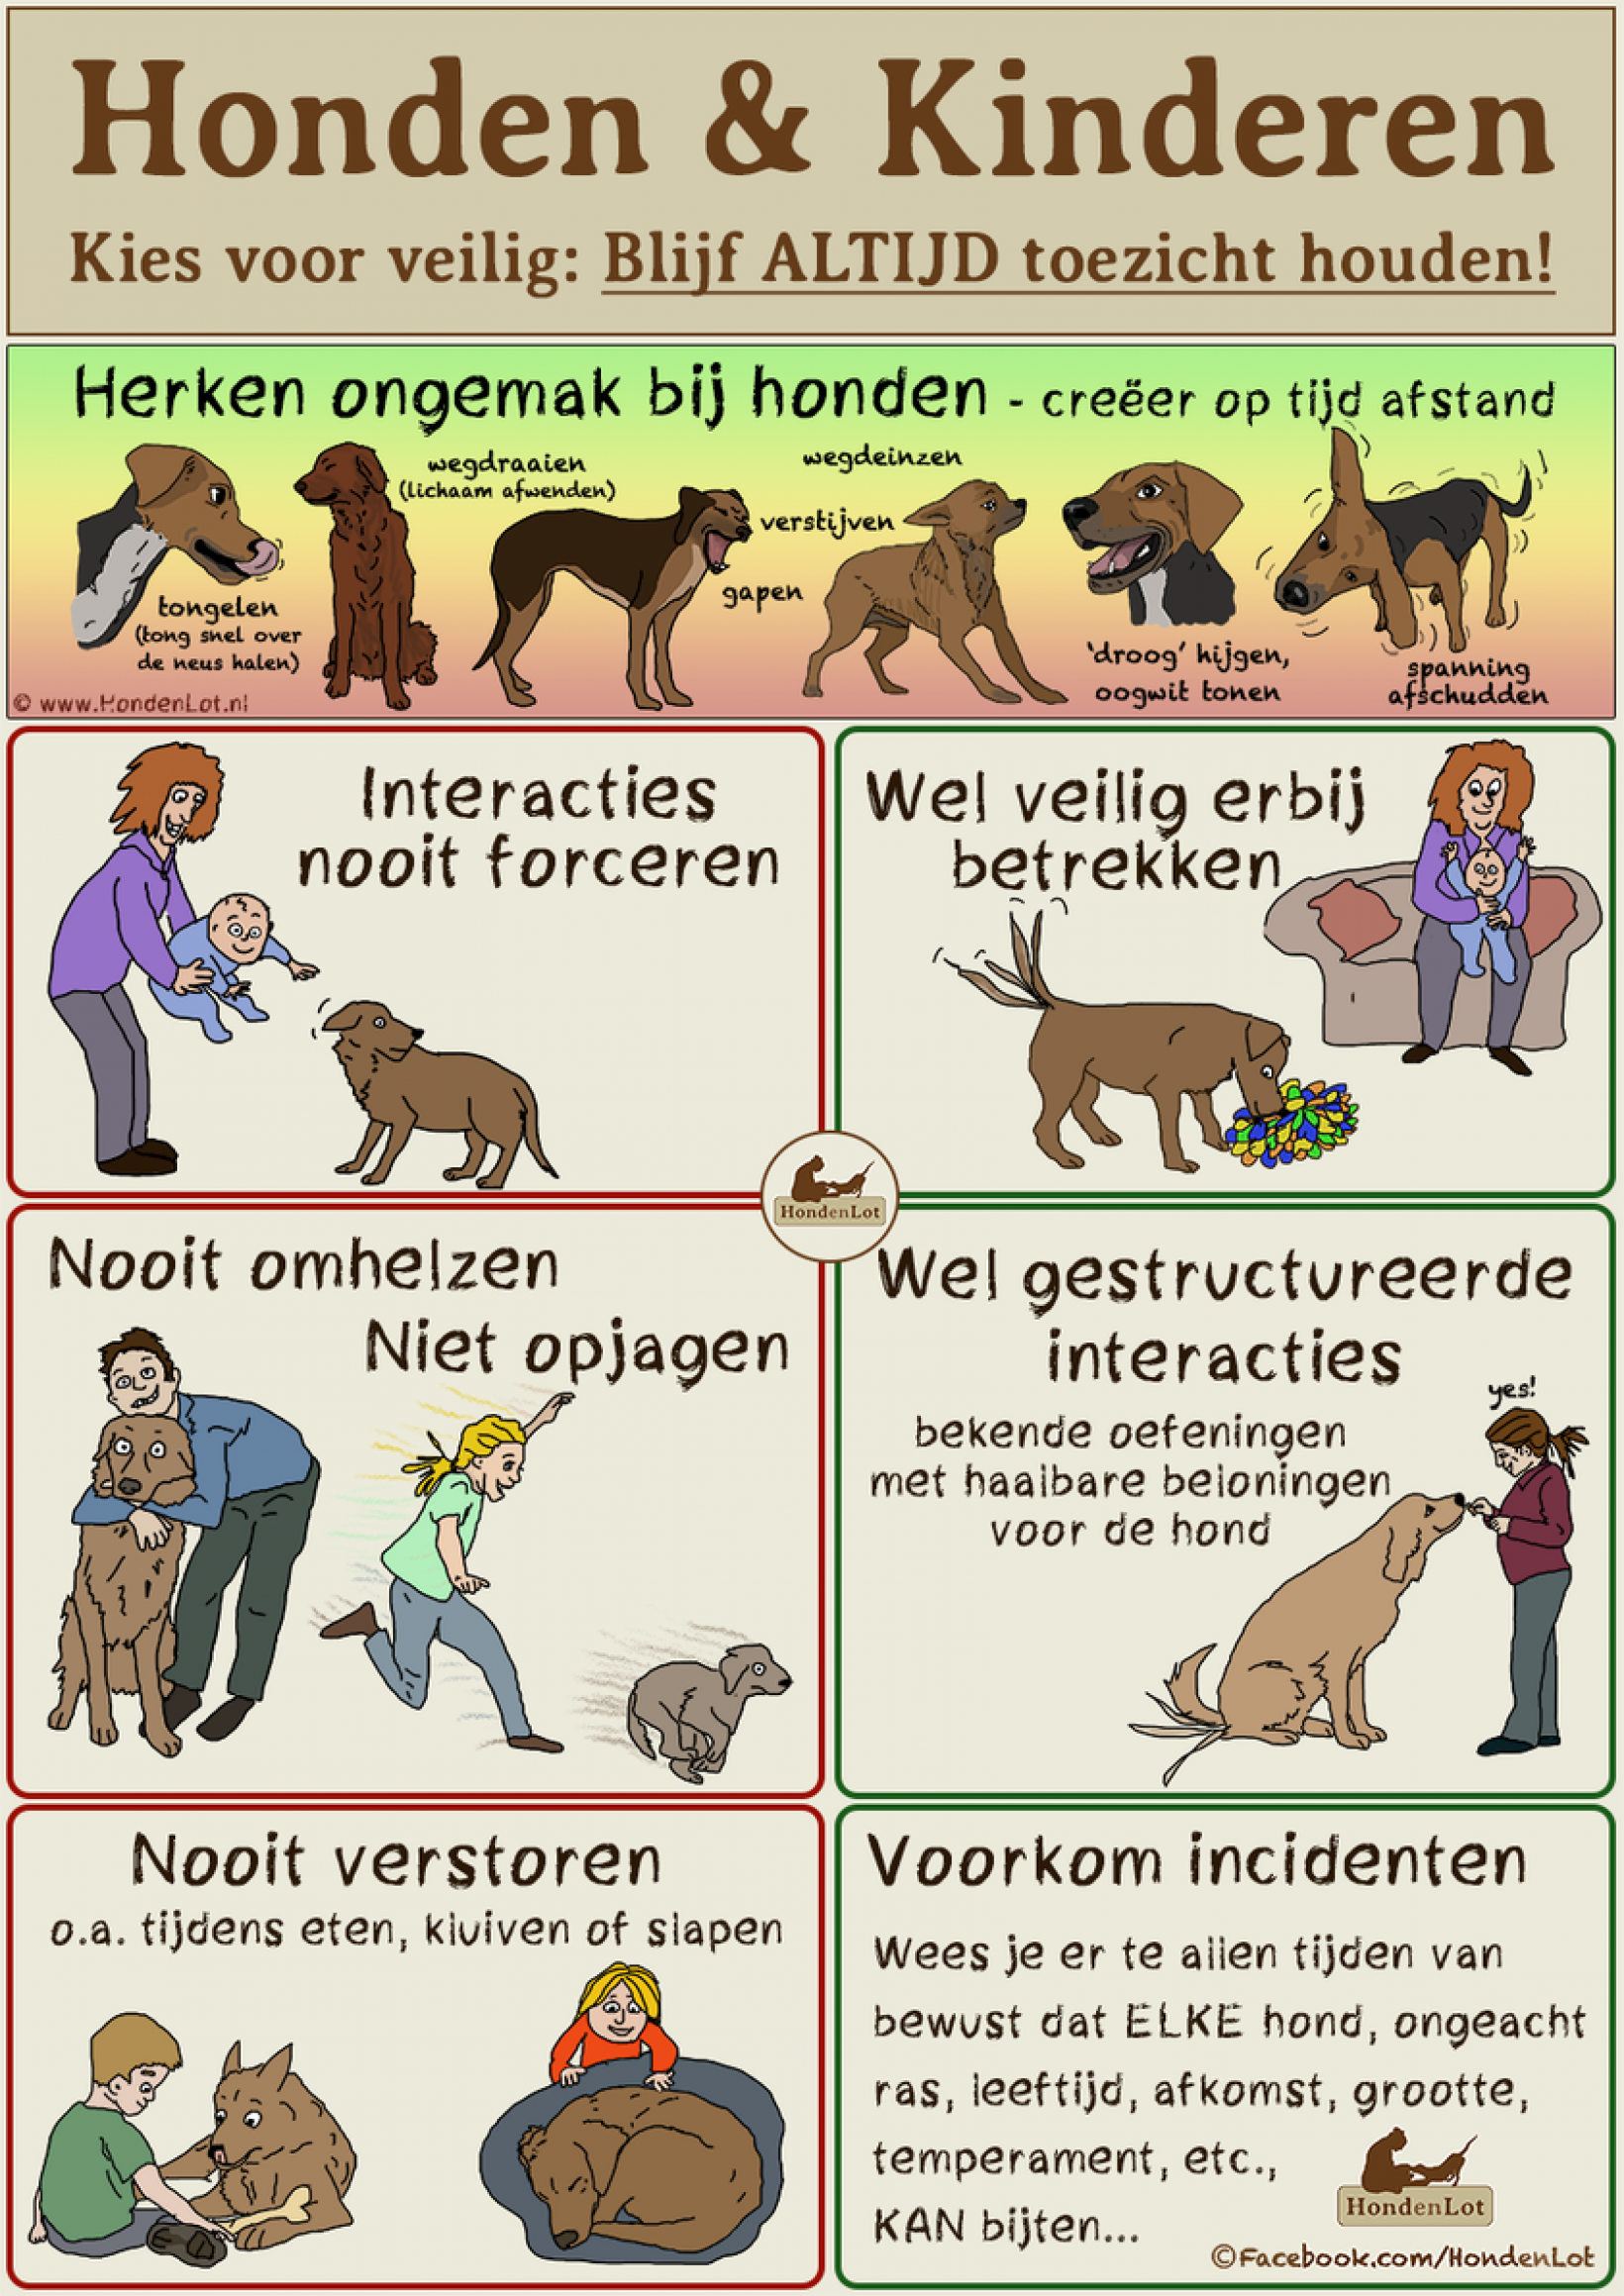 Lounge snorkel zweer De buitenlandse hond en kinderen; de voorbereiding - Verhuisdieren.nl